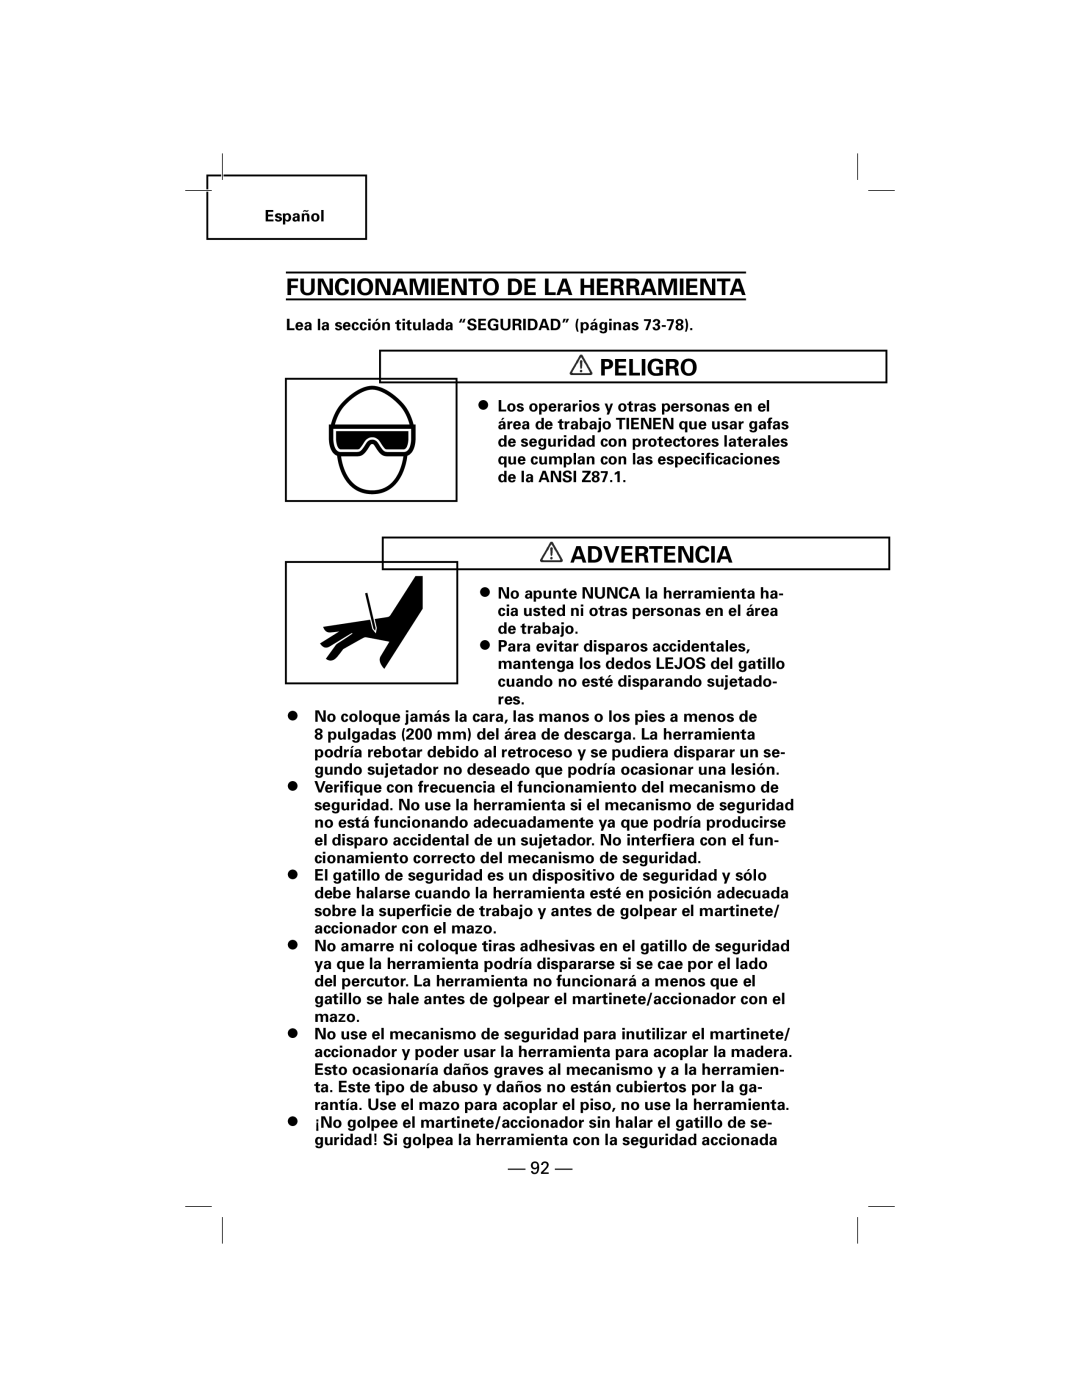 Hitachi N5009AF, NT50AF manual Funcionamiento De La Herramienta, Peligro, Advertencia 